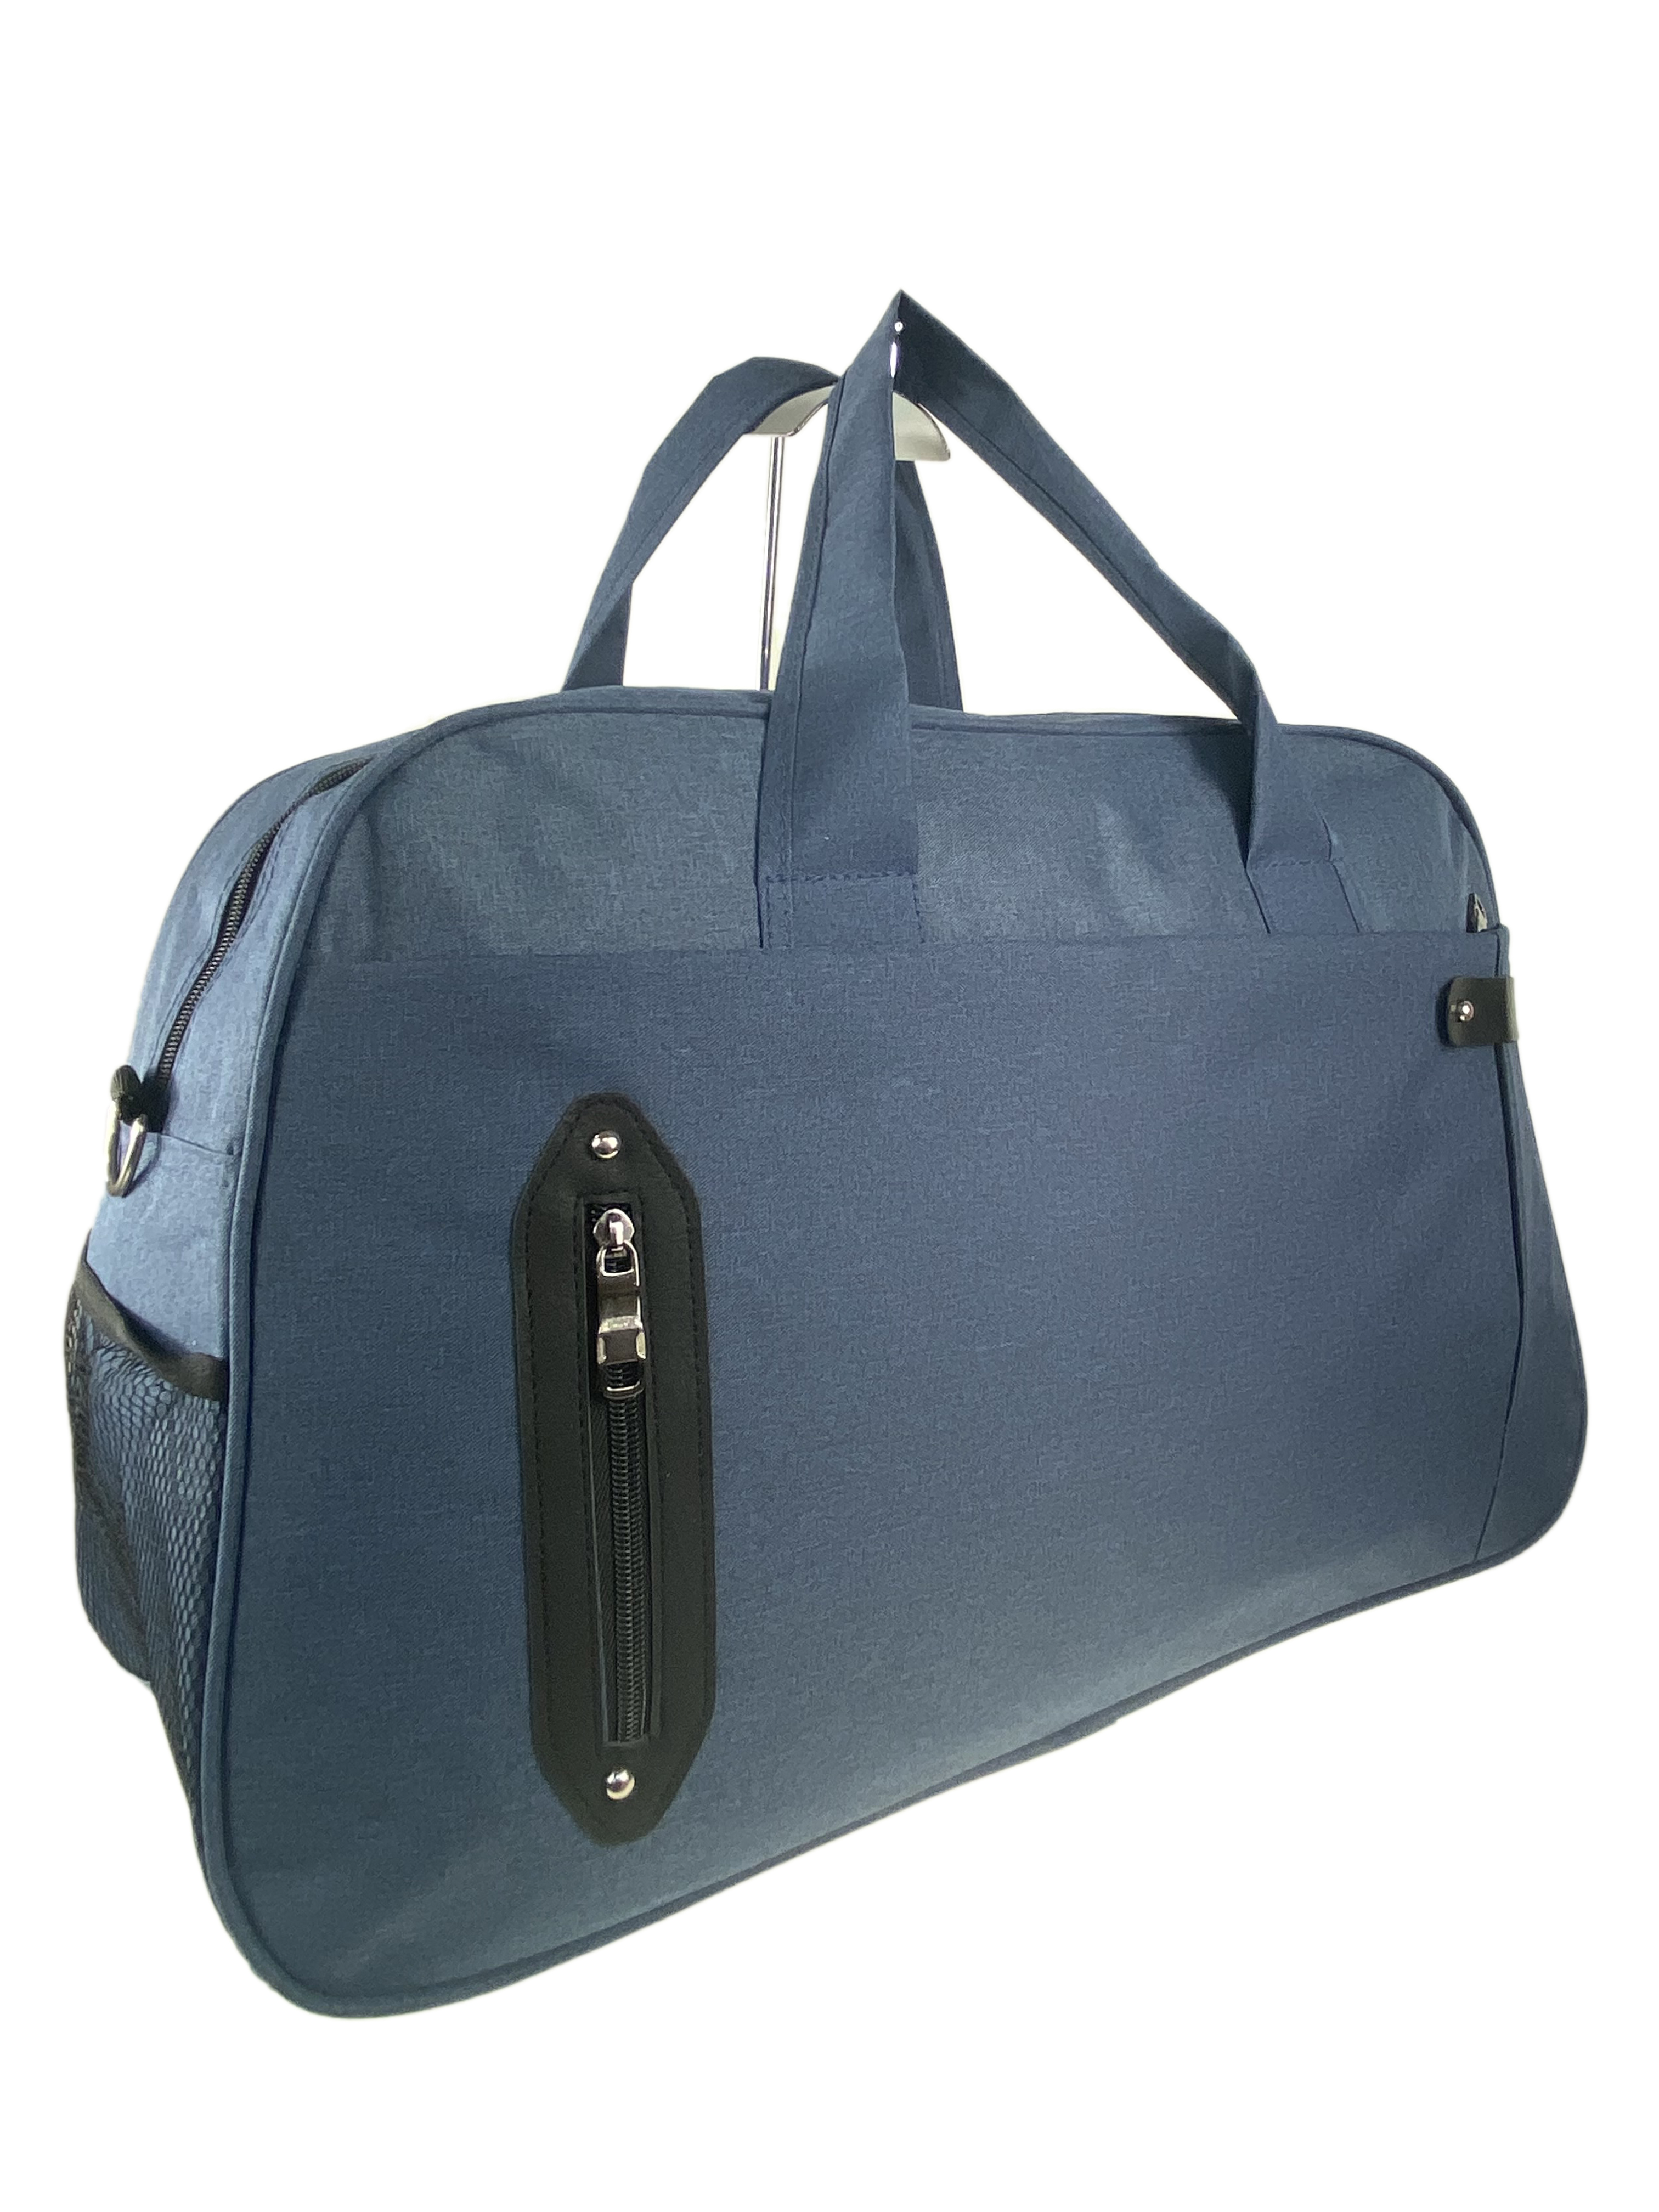 Текстильная дорожная сумка, цвет синий